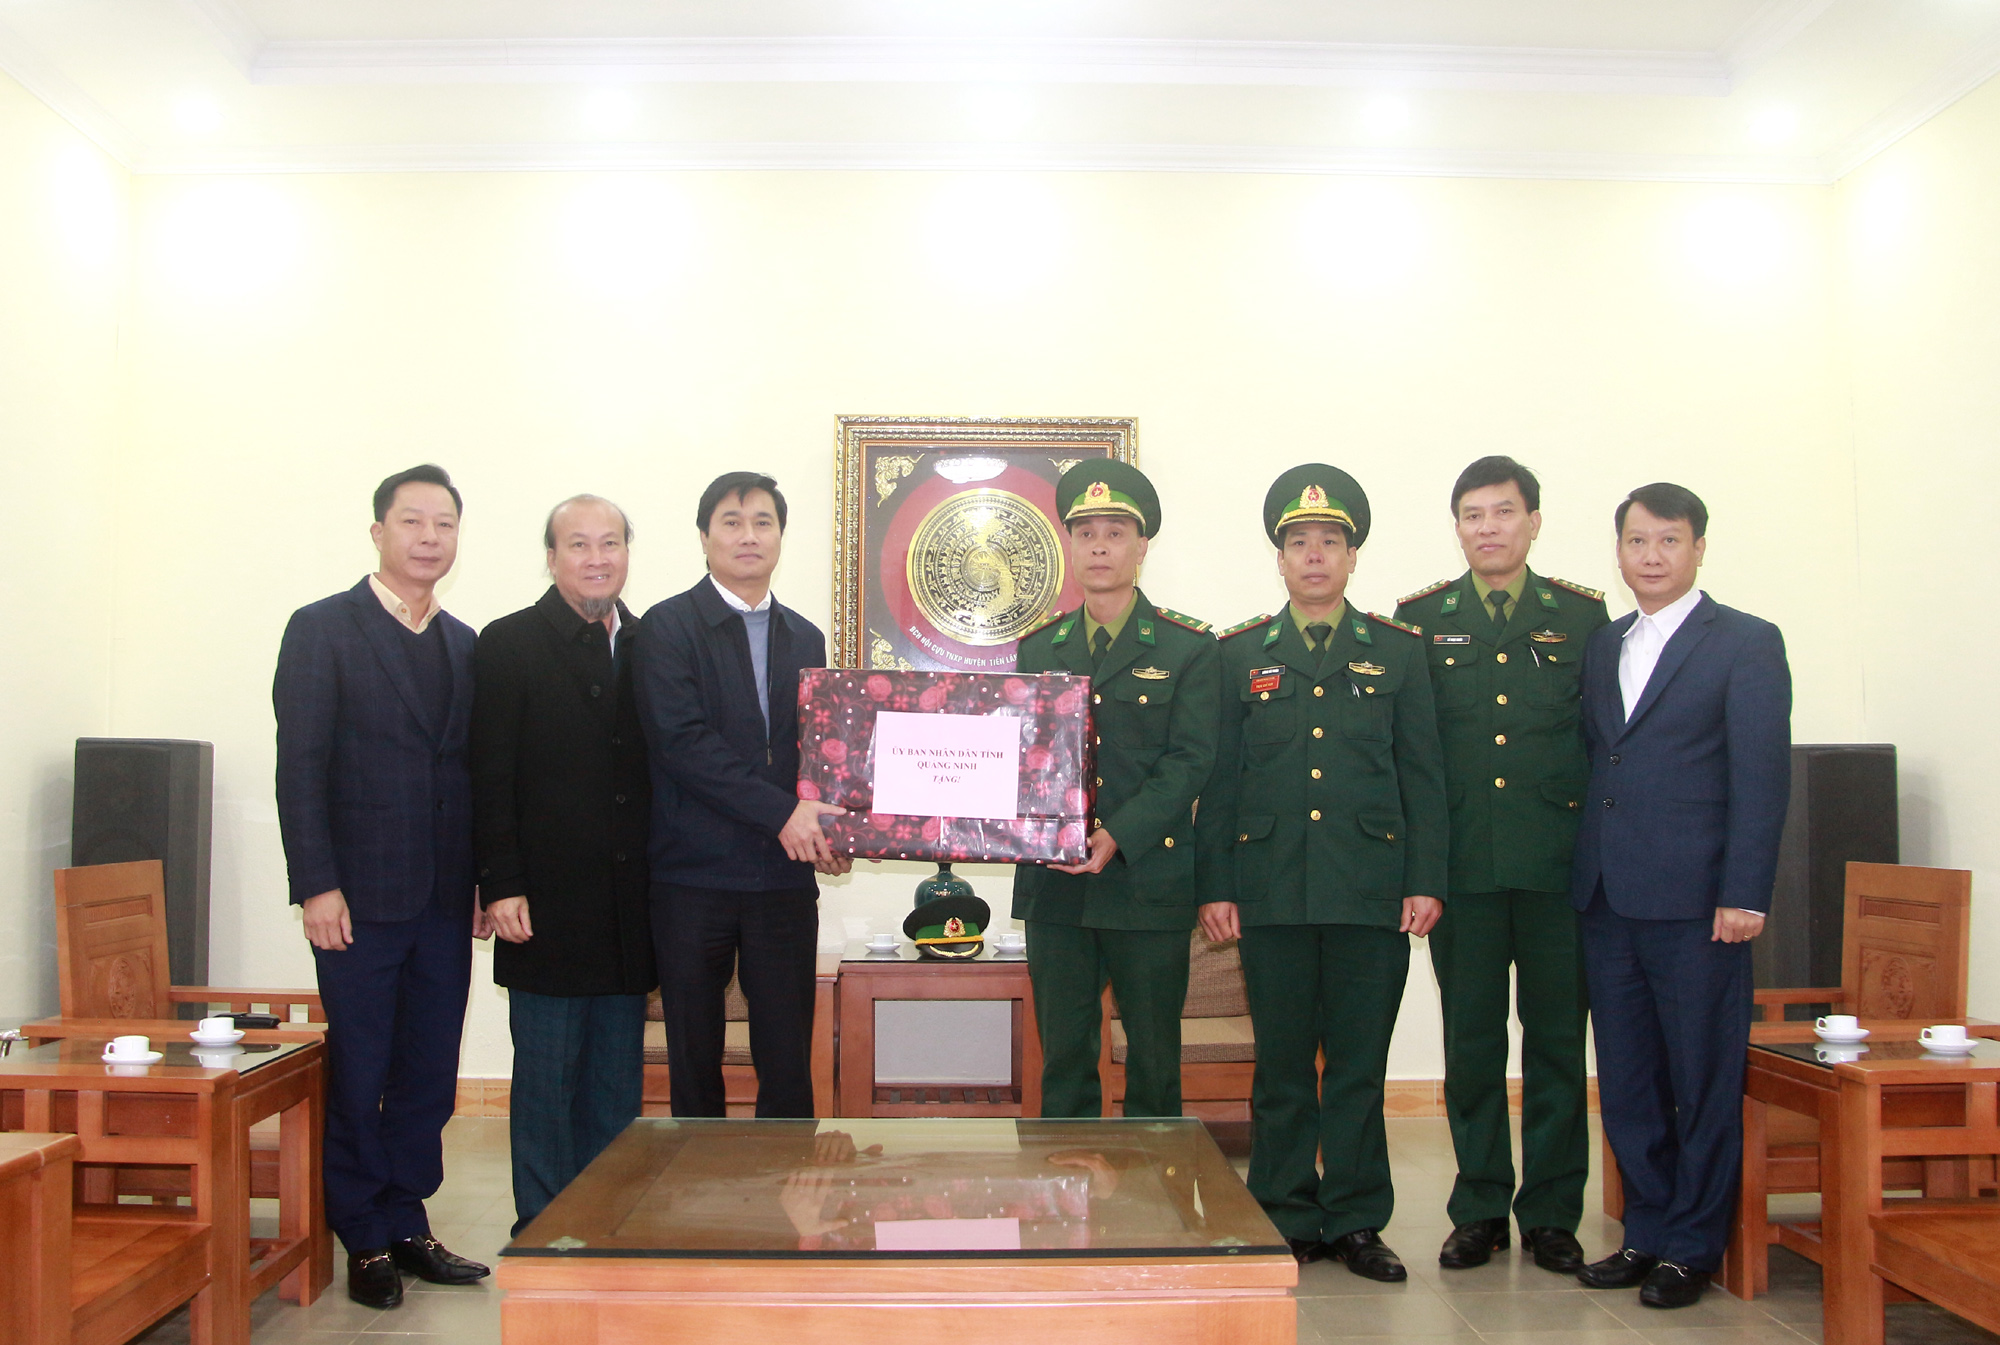 Đồng chí Nguyễn Tường Văn, Chủ tịch UBND tỉnh, tặng quà cho Đồn Biên phòng Pò Hèn.